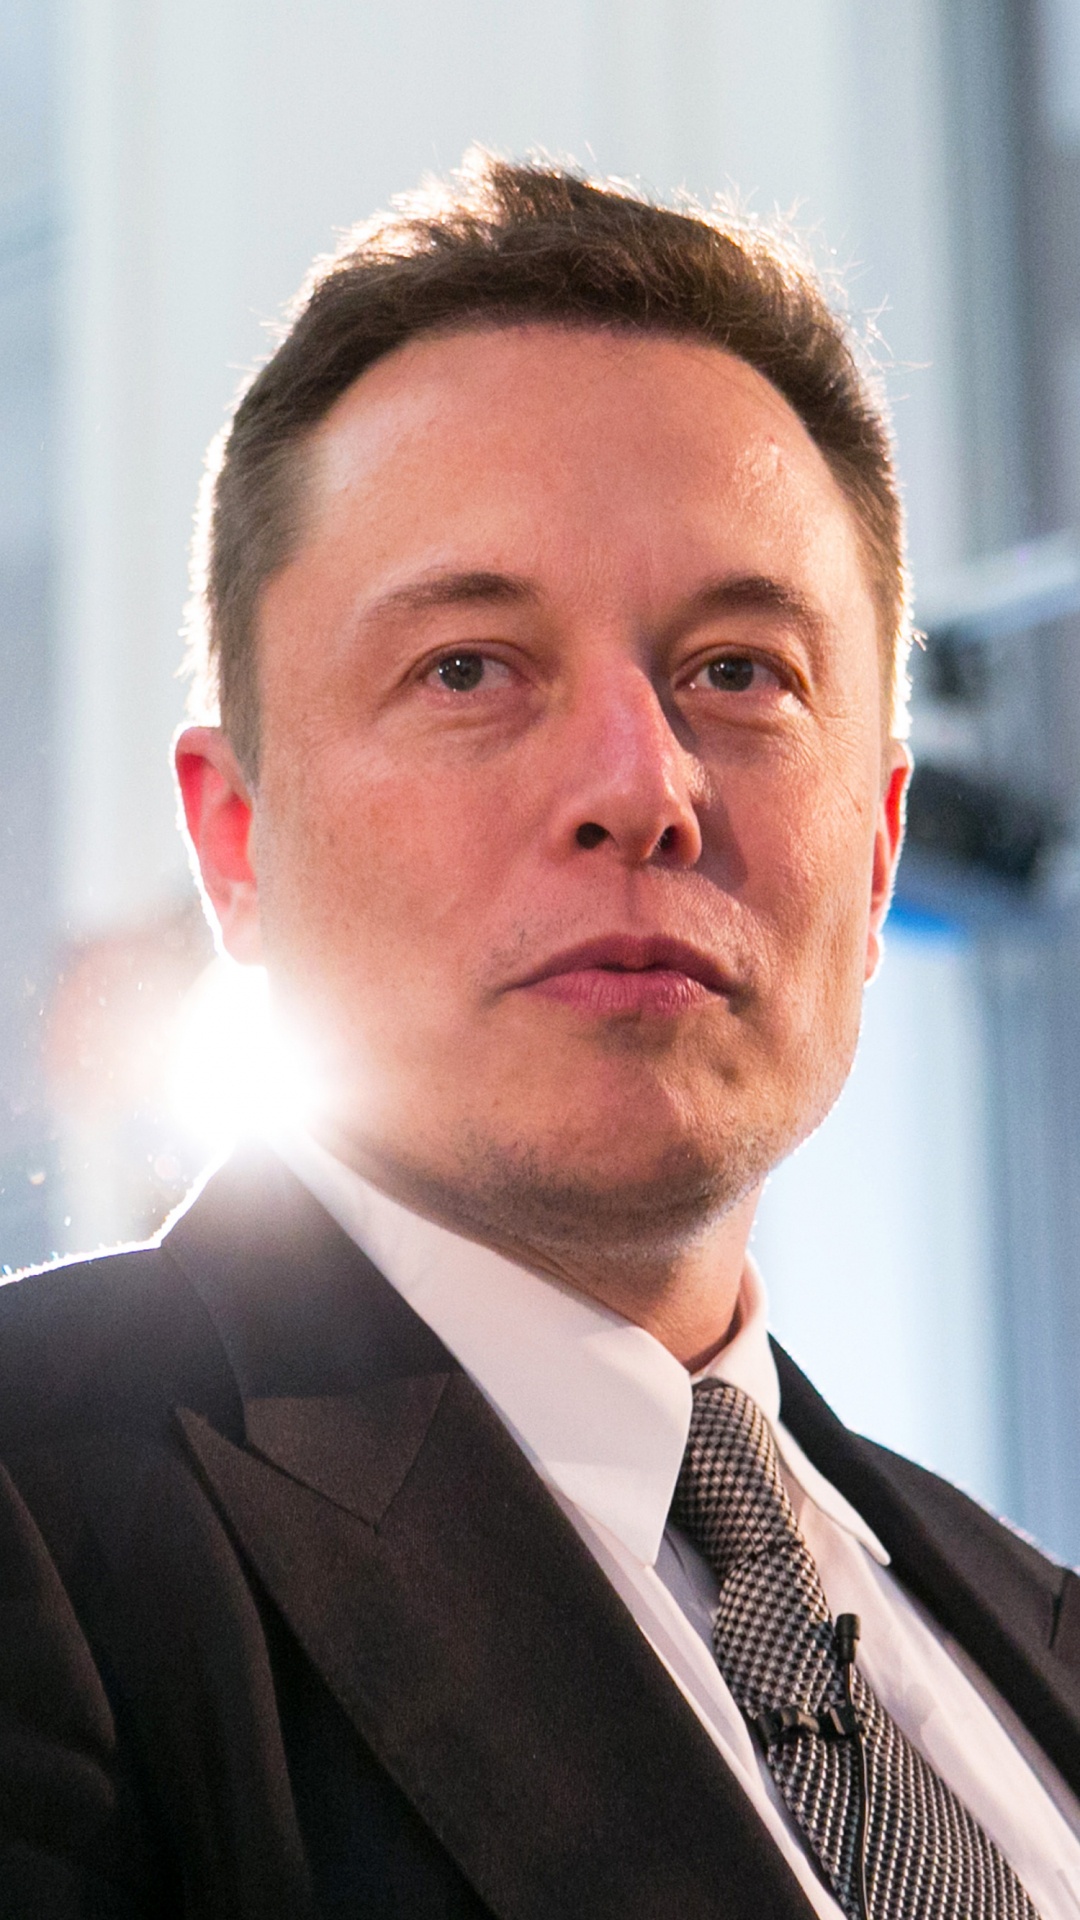 Elon Musk, Kaufmann, Anzug, Gesichtsbehaarung, Business. Wallpaper in 1080x1920 Resolution